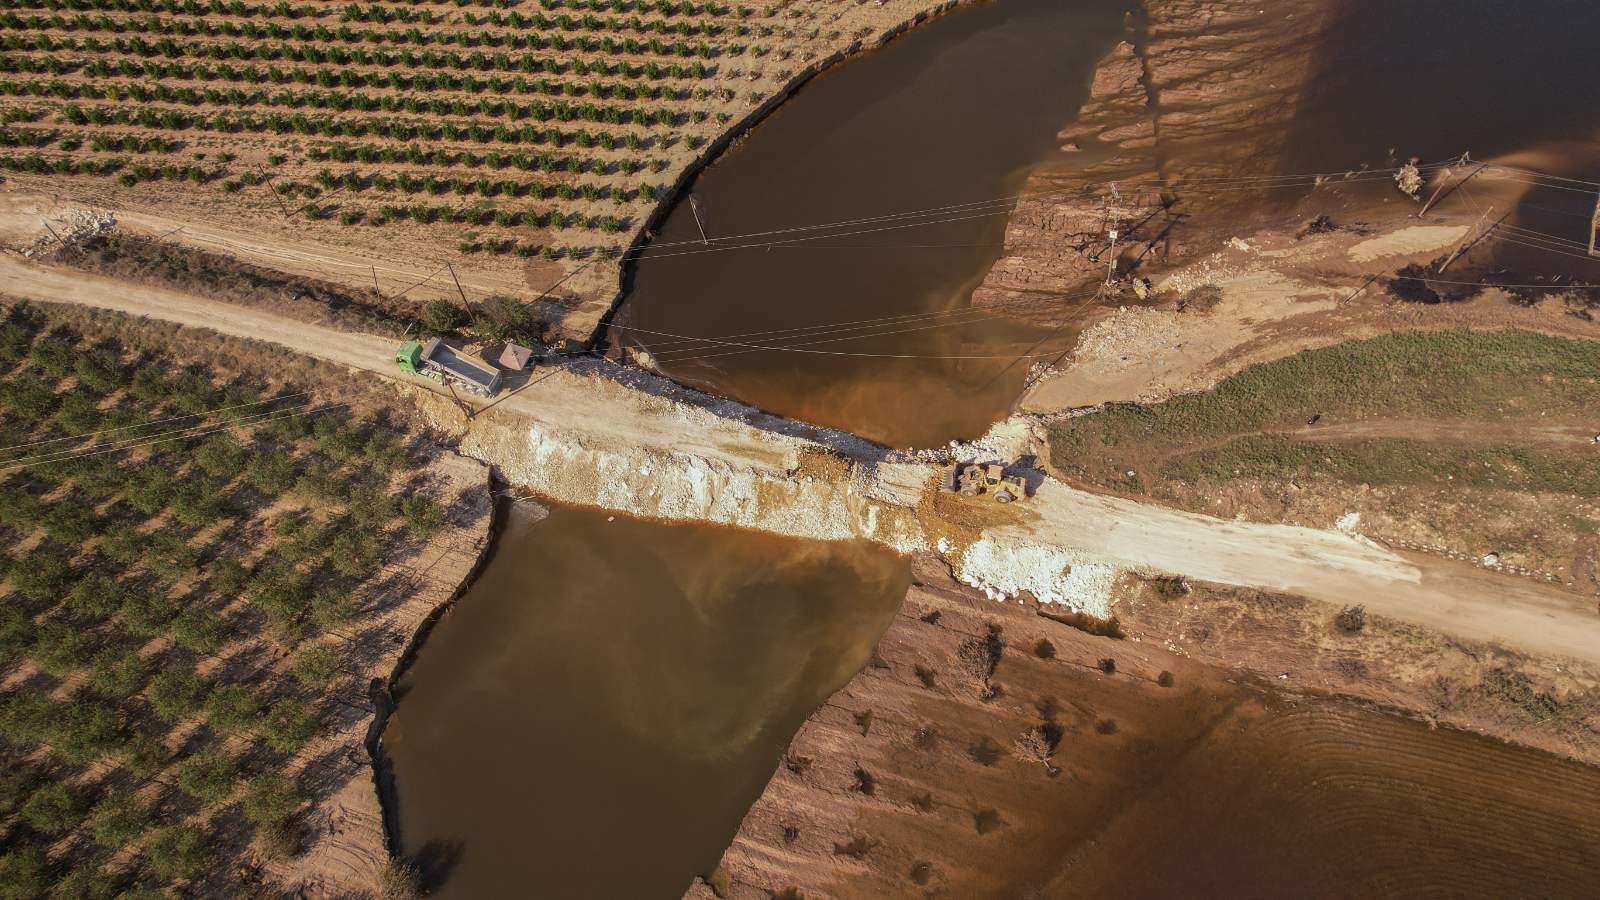 Λάρισα: Εικόνες από drone παρουσιάζουν την νέα κοίτη του Πηνειού που δημιουργήθηκε από τις πλημμύρες – ΦΩΤΟ & ΒΙΝΤΕΟ